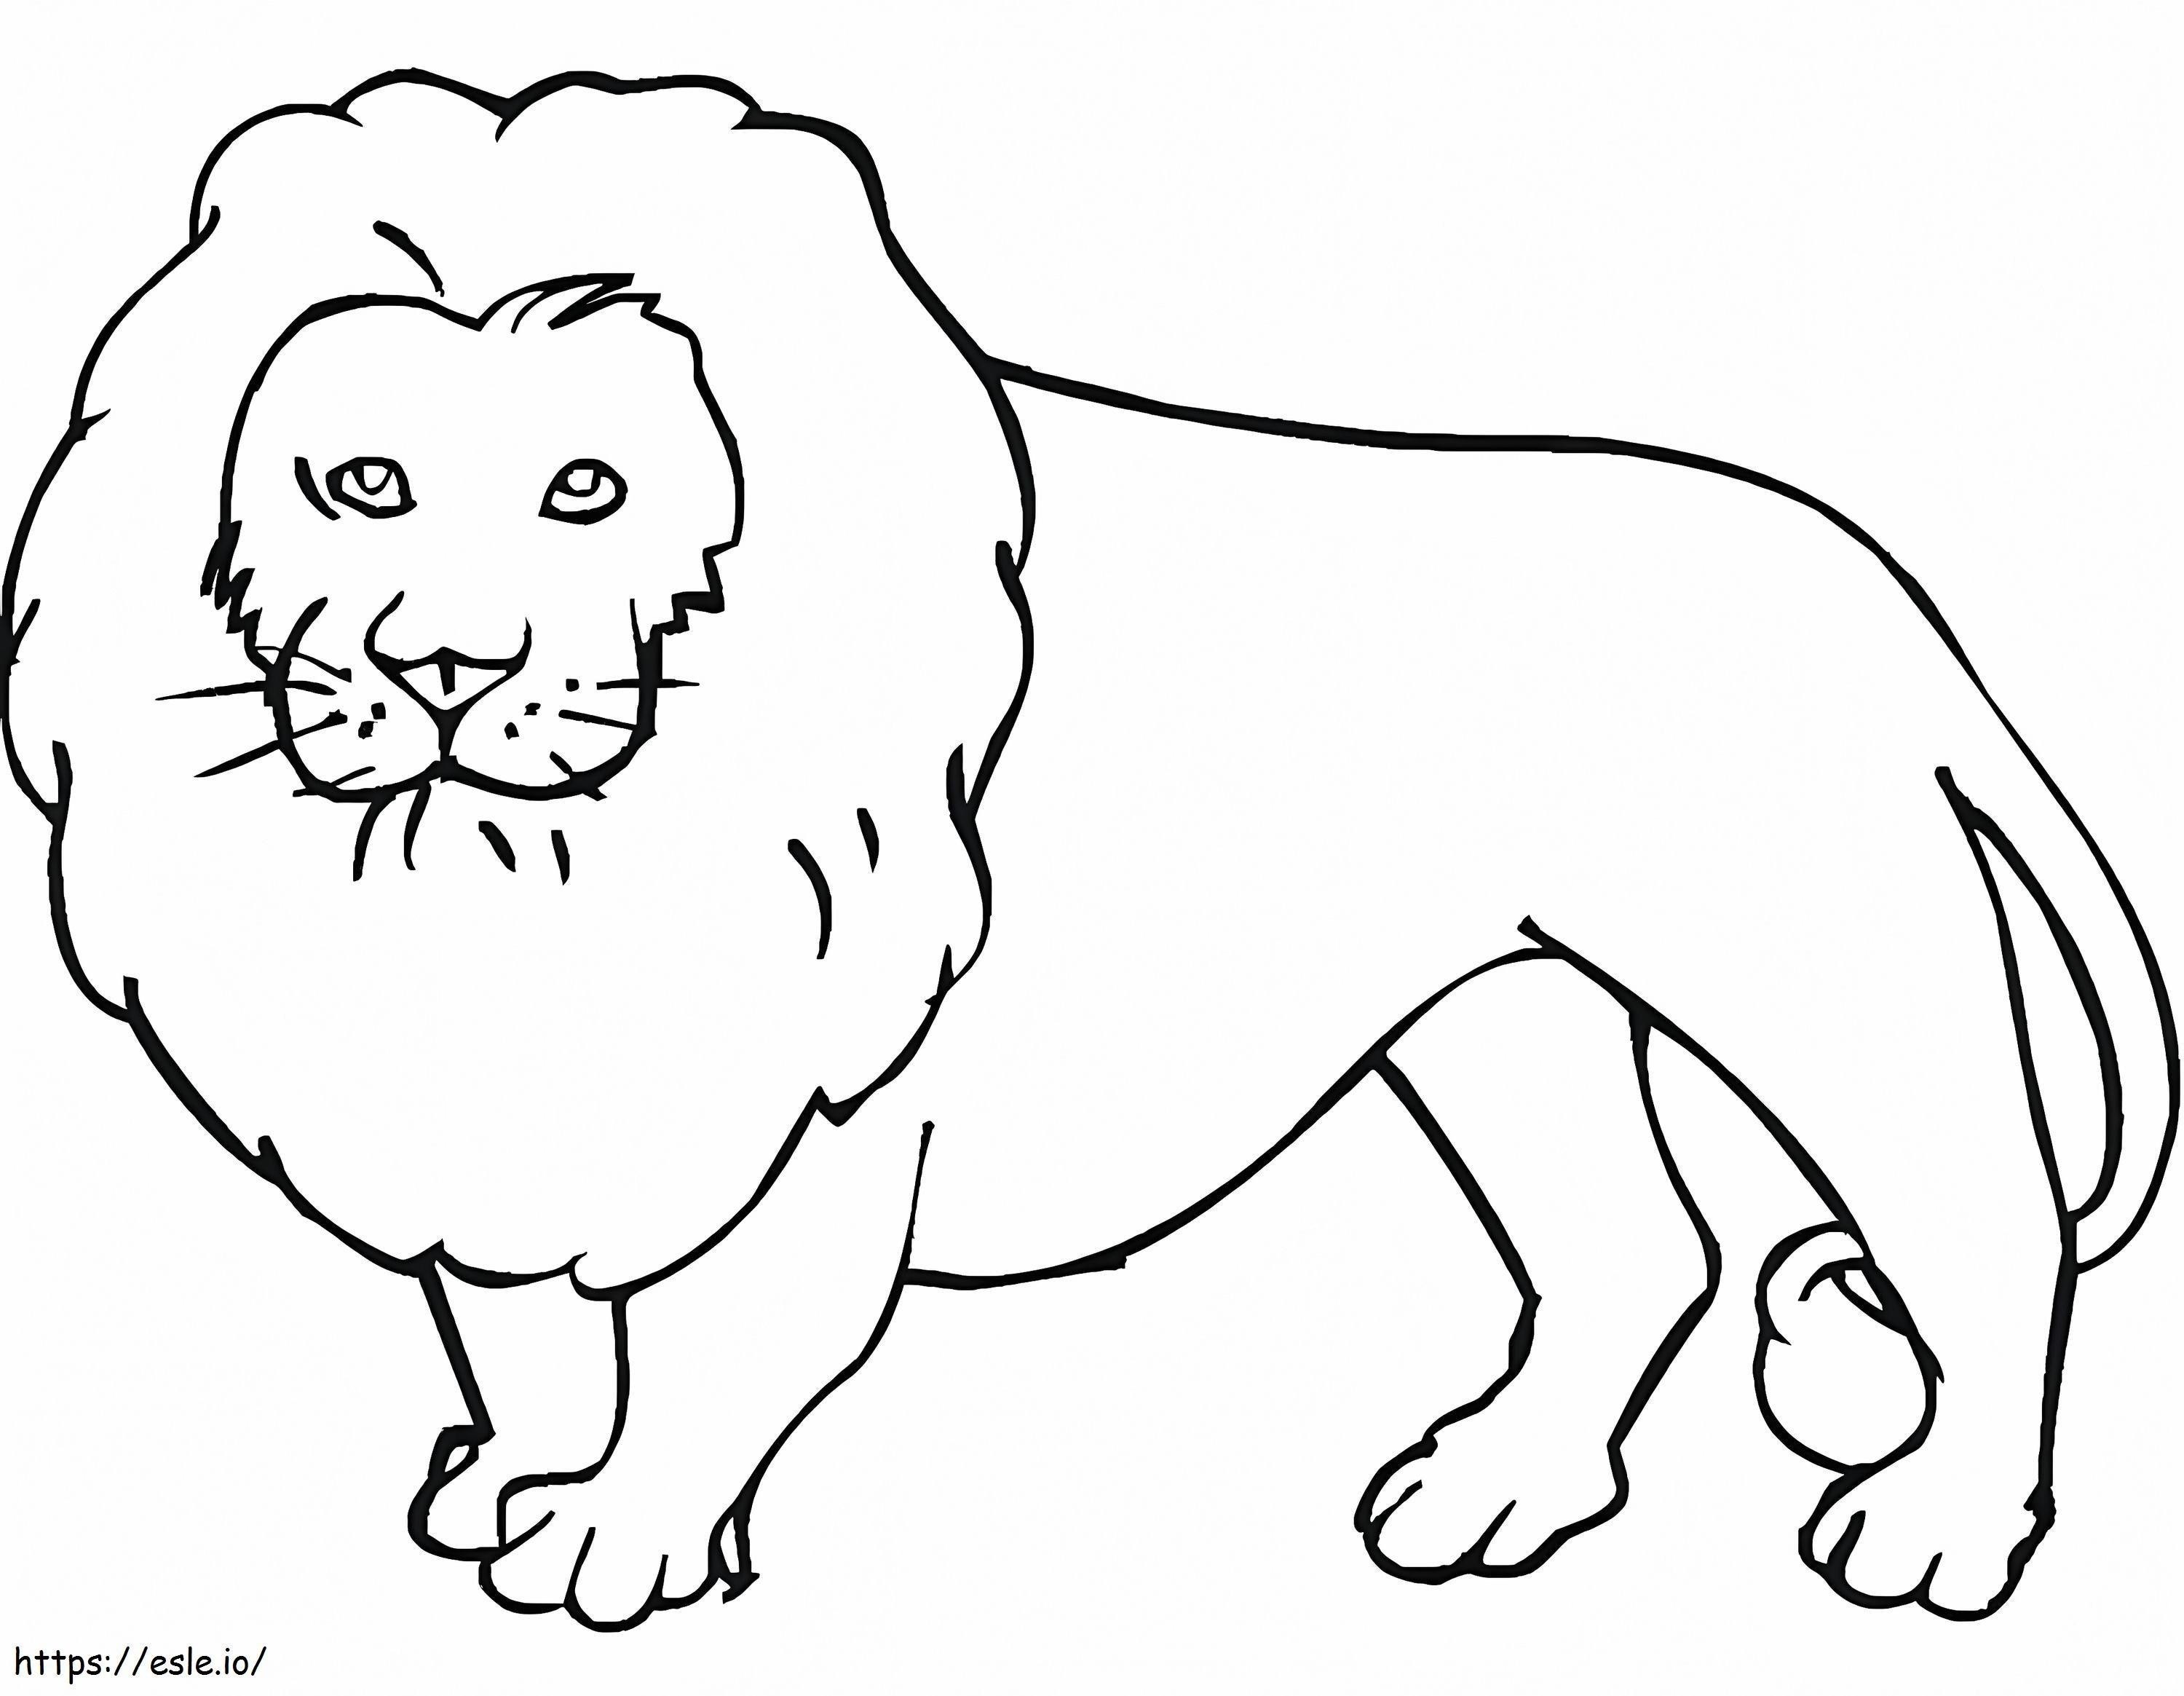 Short Lion coloring page